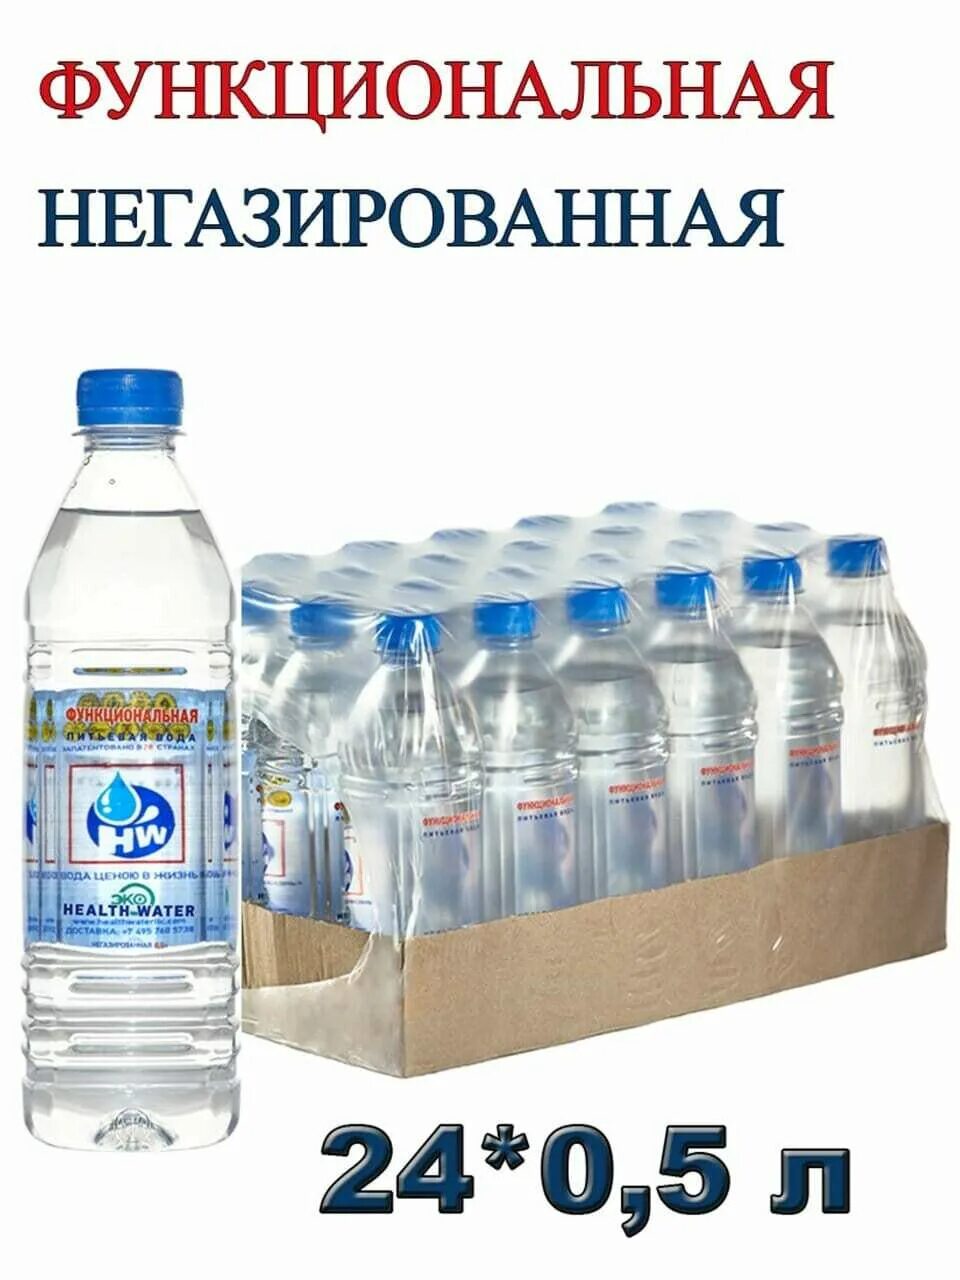 Заказать воду воронеж. Функциональная питьевая вода. Функциональная вода Health Water. Питьевая вода Московская область. Вода питьевая Читинская.